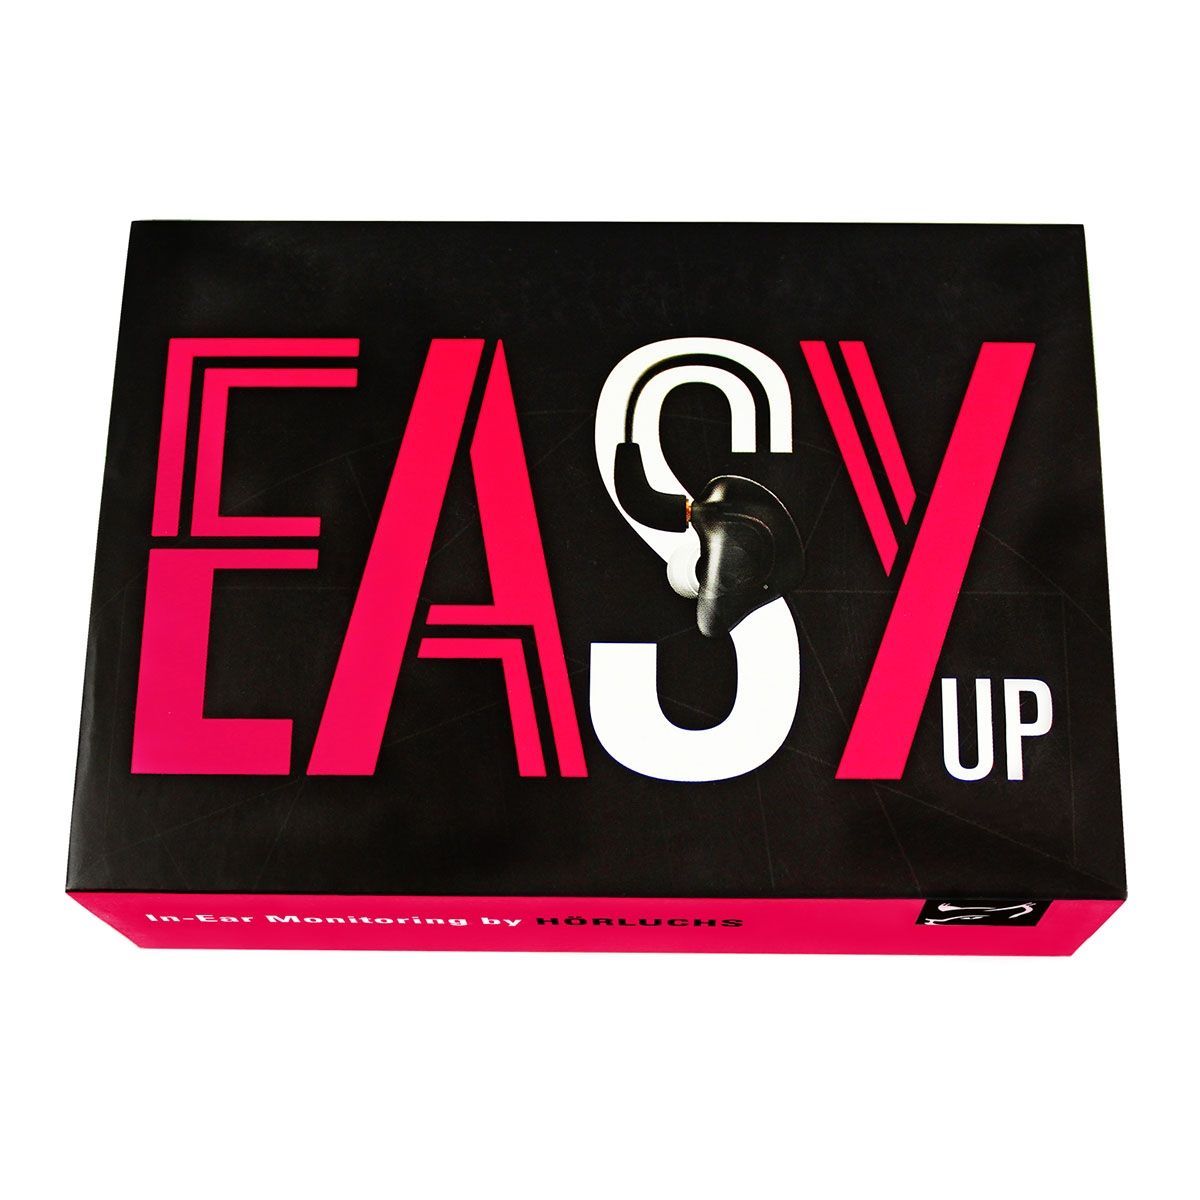 Hörluchs EasyUp In-Ear Hörer 1 Wege Universeller Hörer für den Einstieg